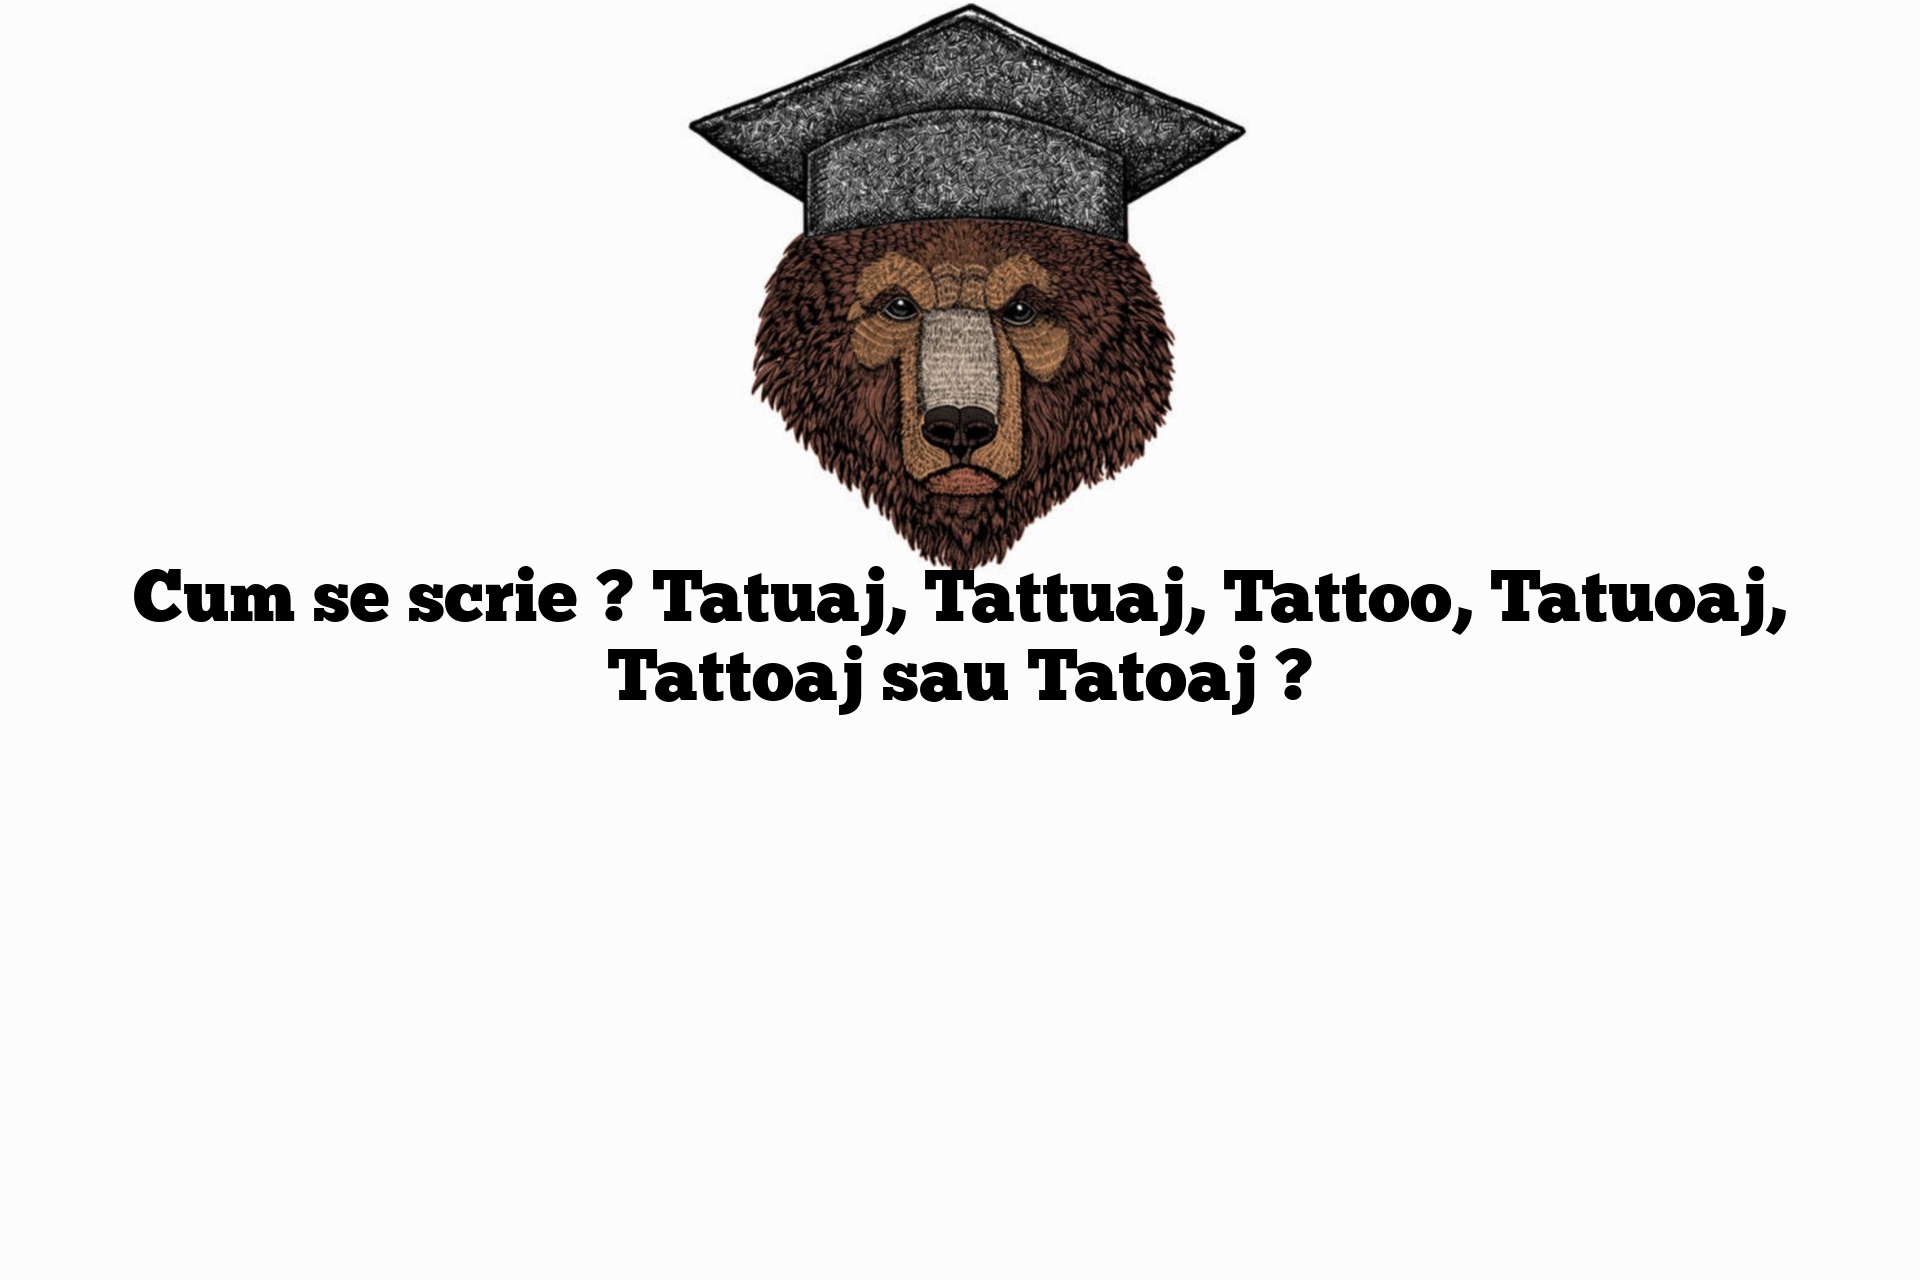 Cum se scrie ? Tatuaj, Tattuaj, Tattoo, Tatuoaj, Tattoaj sau Tatoaj ?